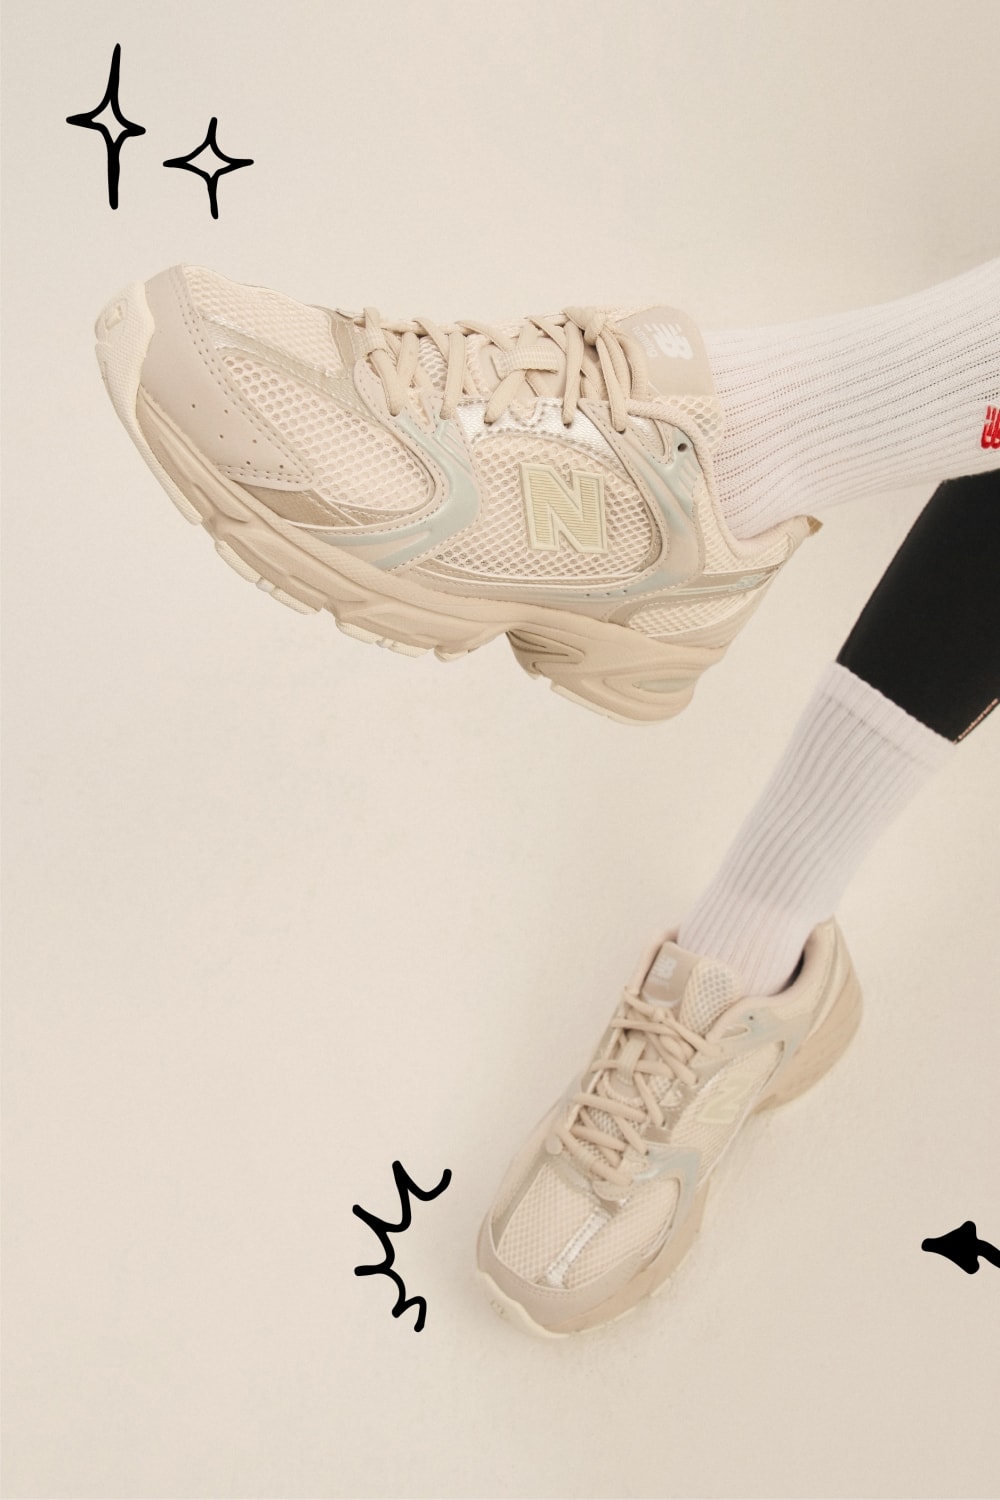 풋락커, ‘The Heart of Sneakers’ 캠페인 공개 foot locker sneaker campaign